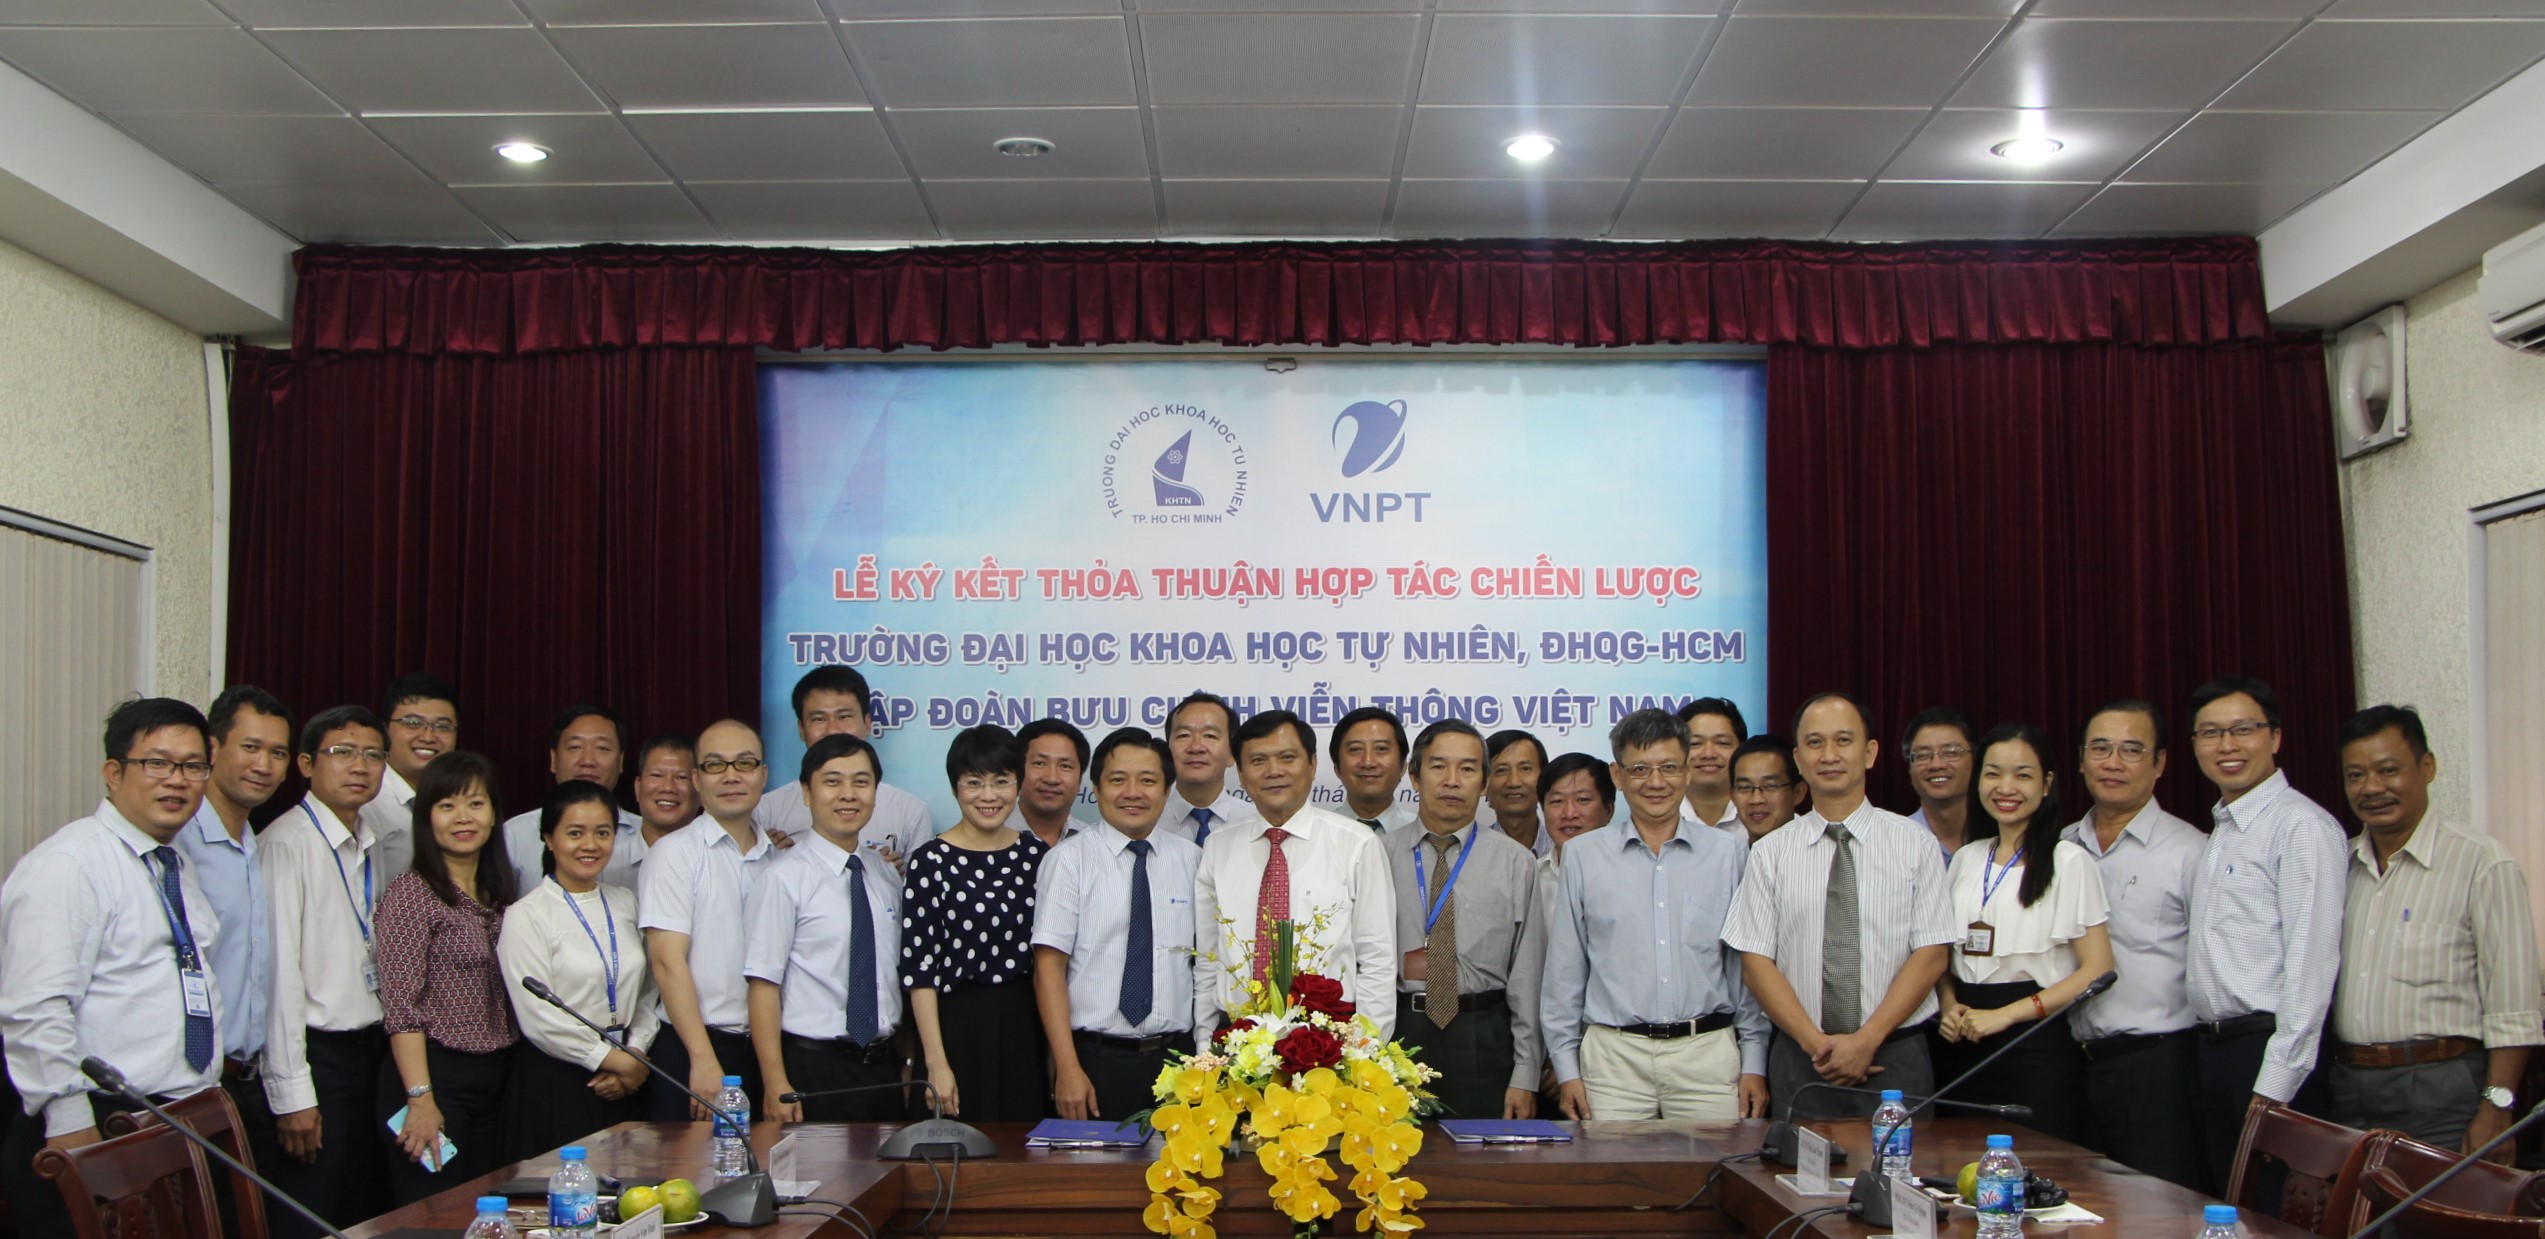 Thỏa thuận hợp tác chiến lược giữa  Tập Đoàn Bưu Chính Viễn Thông Việt Nam  và Trường Đại Học Khoa Học Tự Nhiên, ĐHQG-HCM